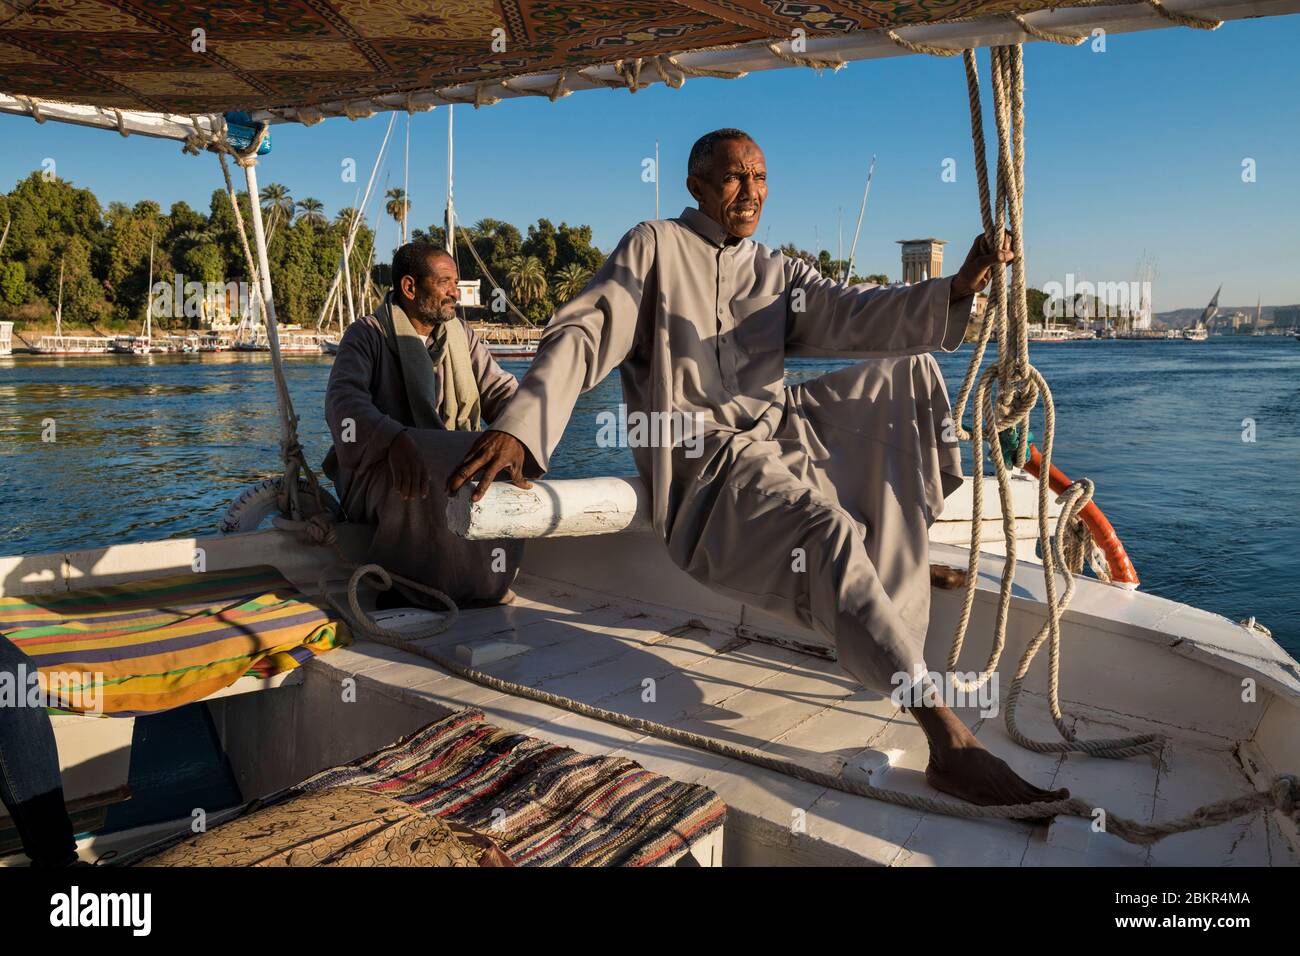 Égypte, haute Égypte, près de l'île d'Elephanine, marin sur un felouque naviguant sur le Nil Banque D'Images